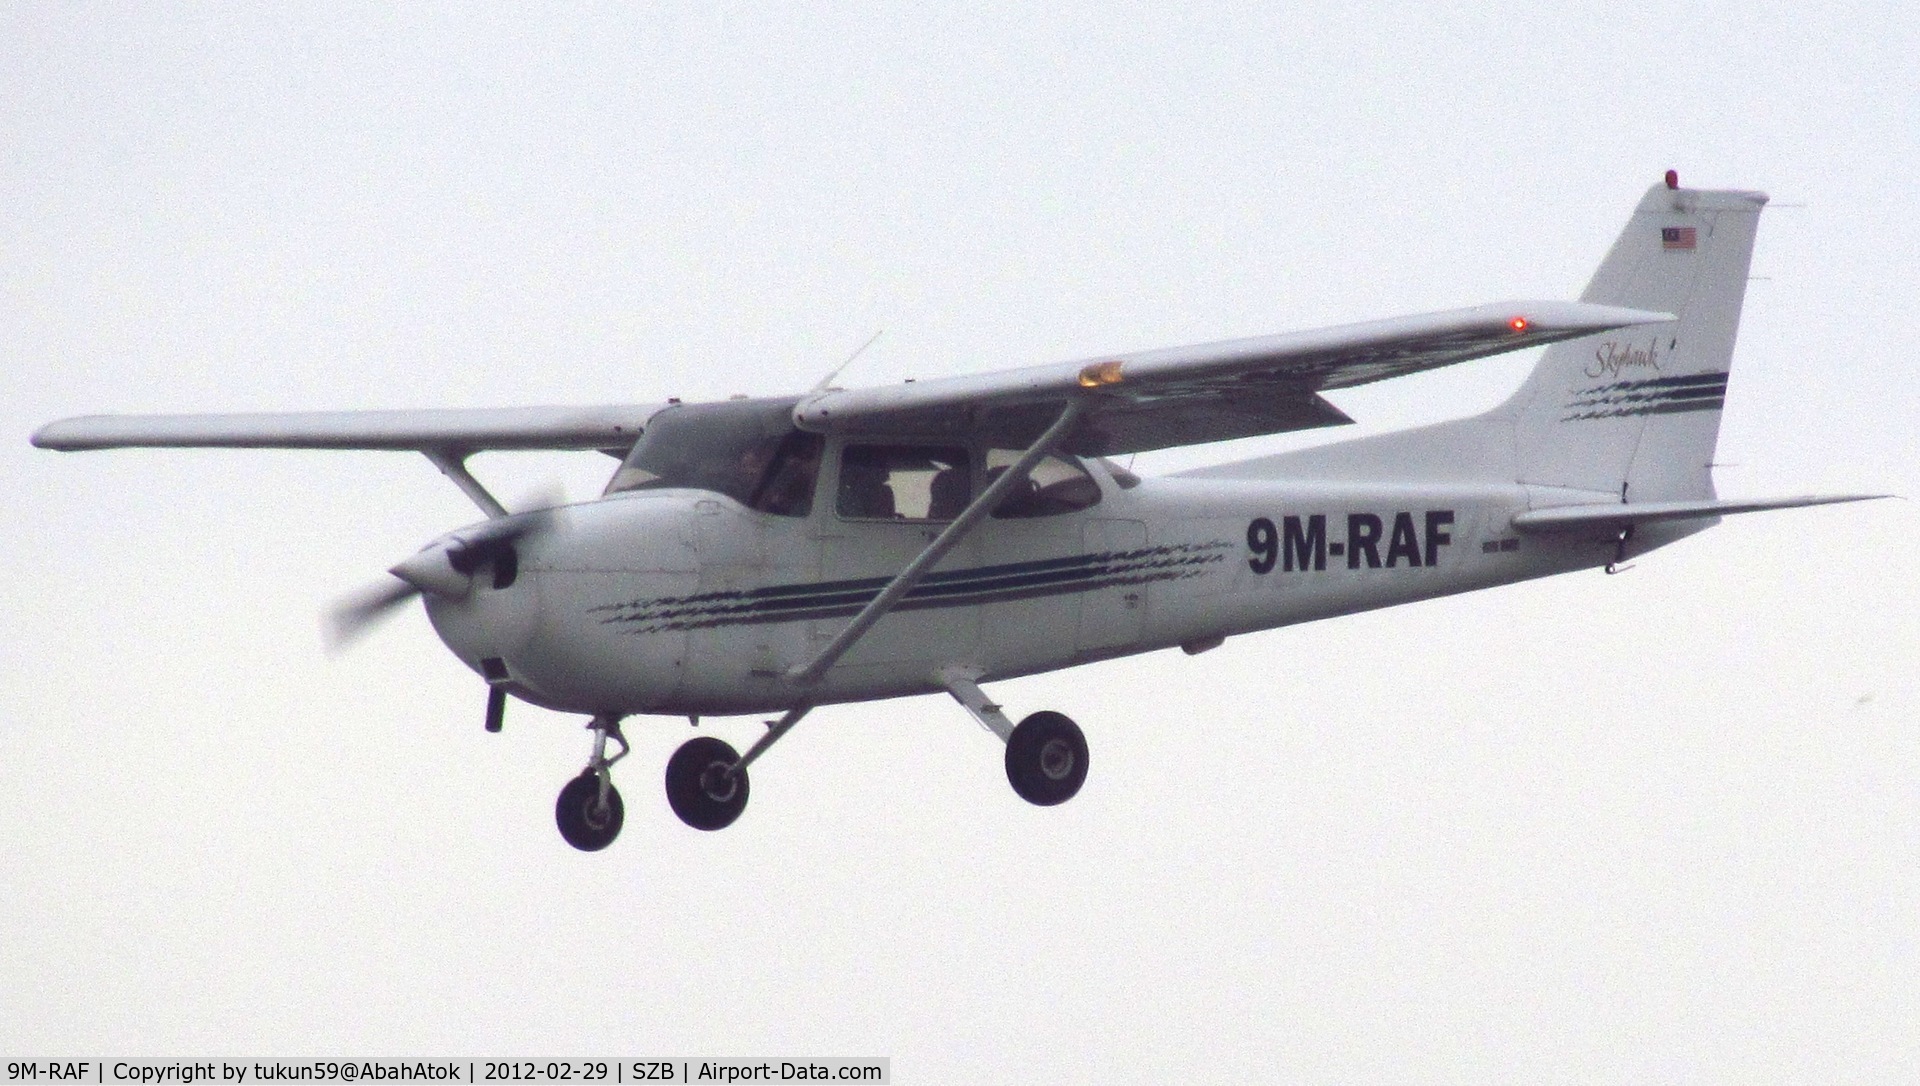 9M-RAF, Cessna 172R C/N Not found 9M-RAF, Private Plane